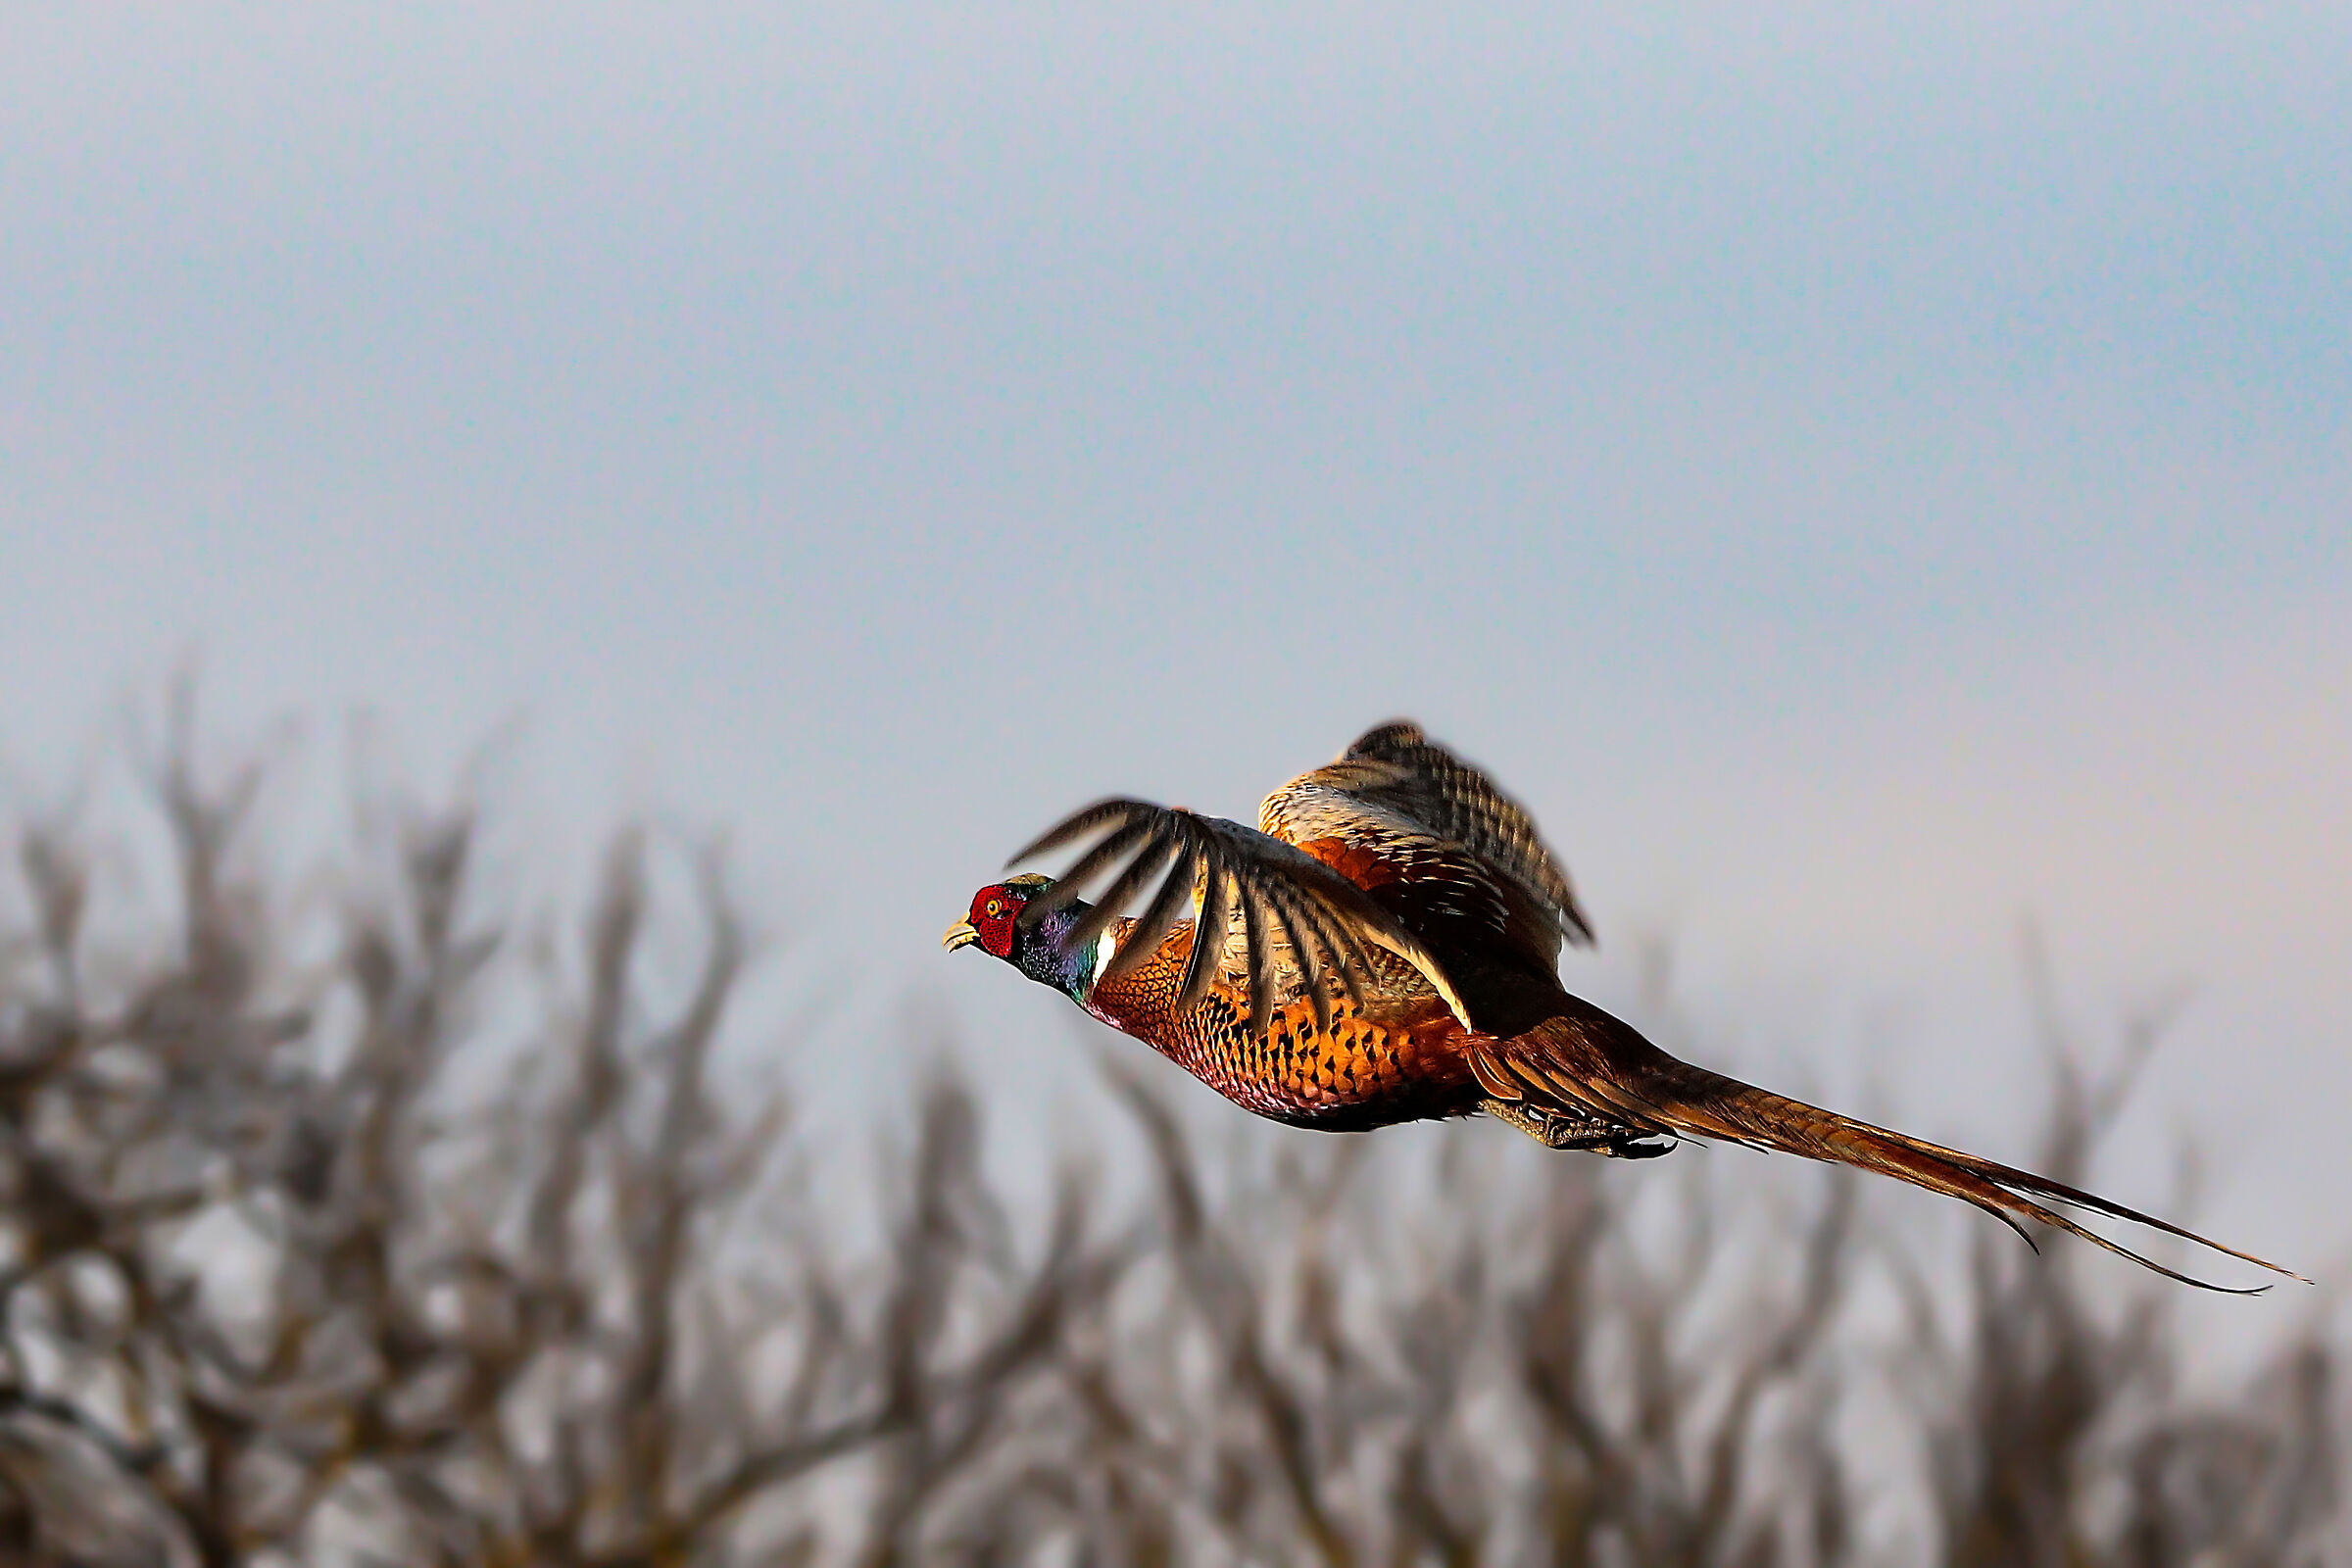 Male pheasant in flight...